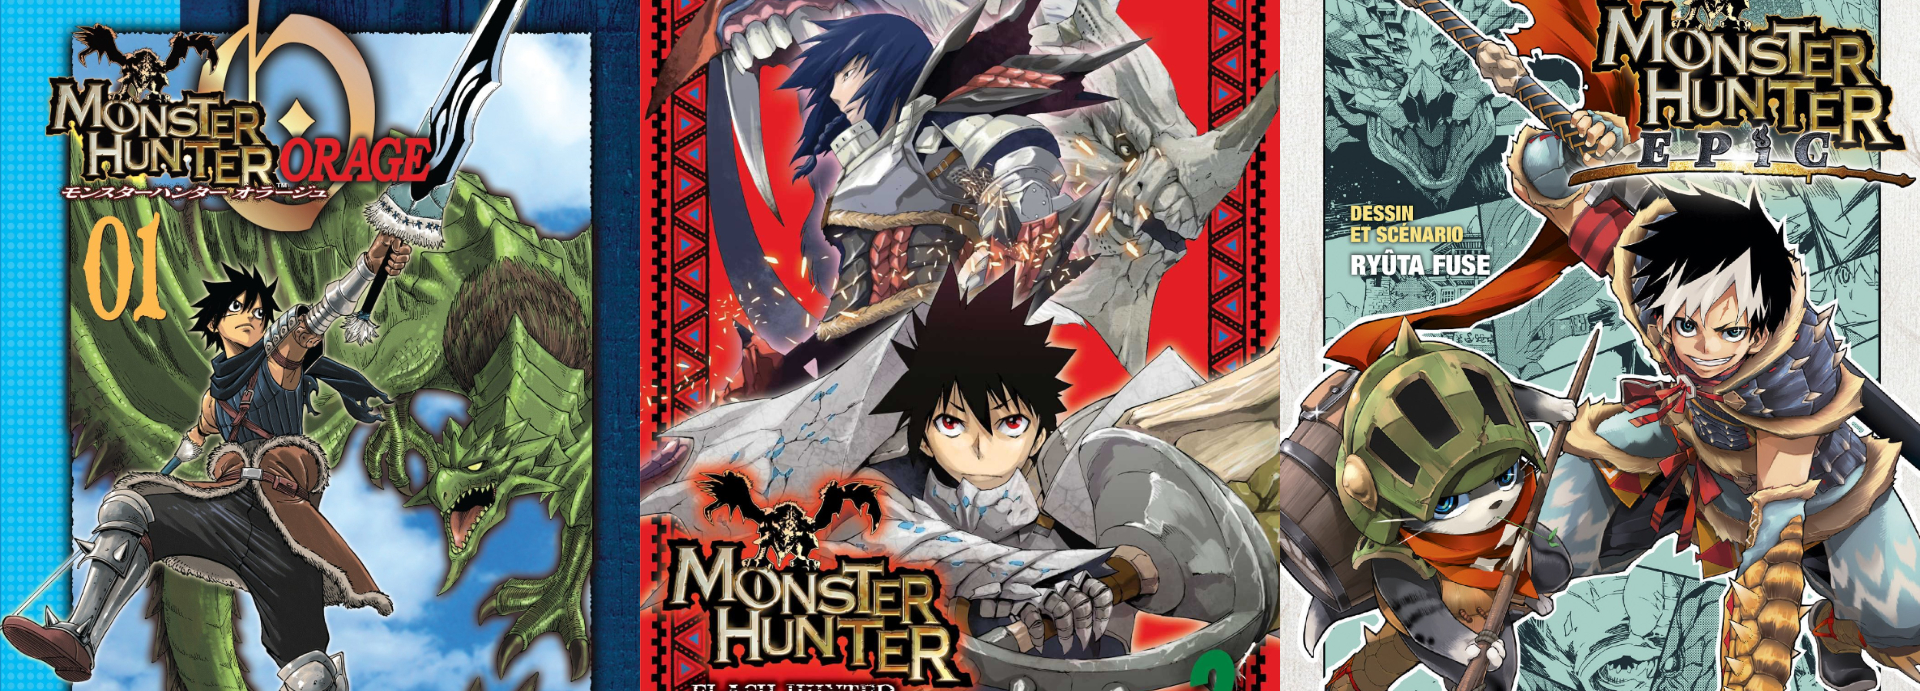 Anime Monster Hunter World Mangaka Fansub Anime cg Artwork manga png   PNGEgg